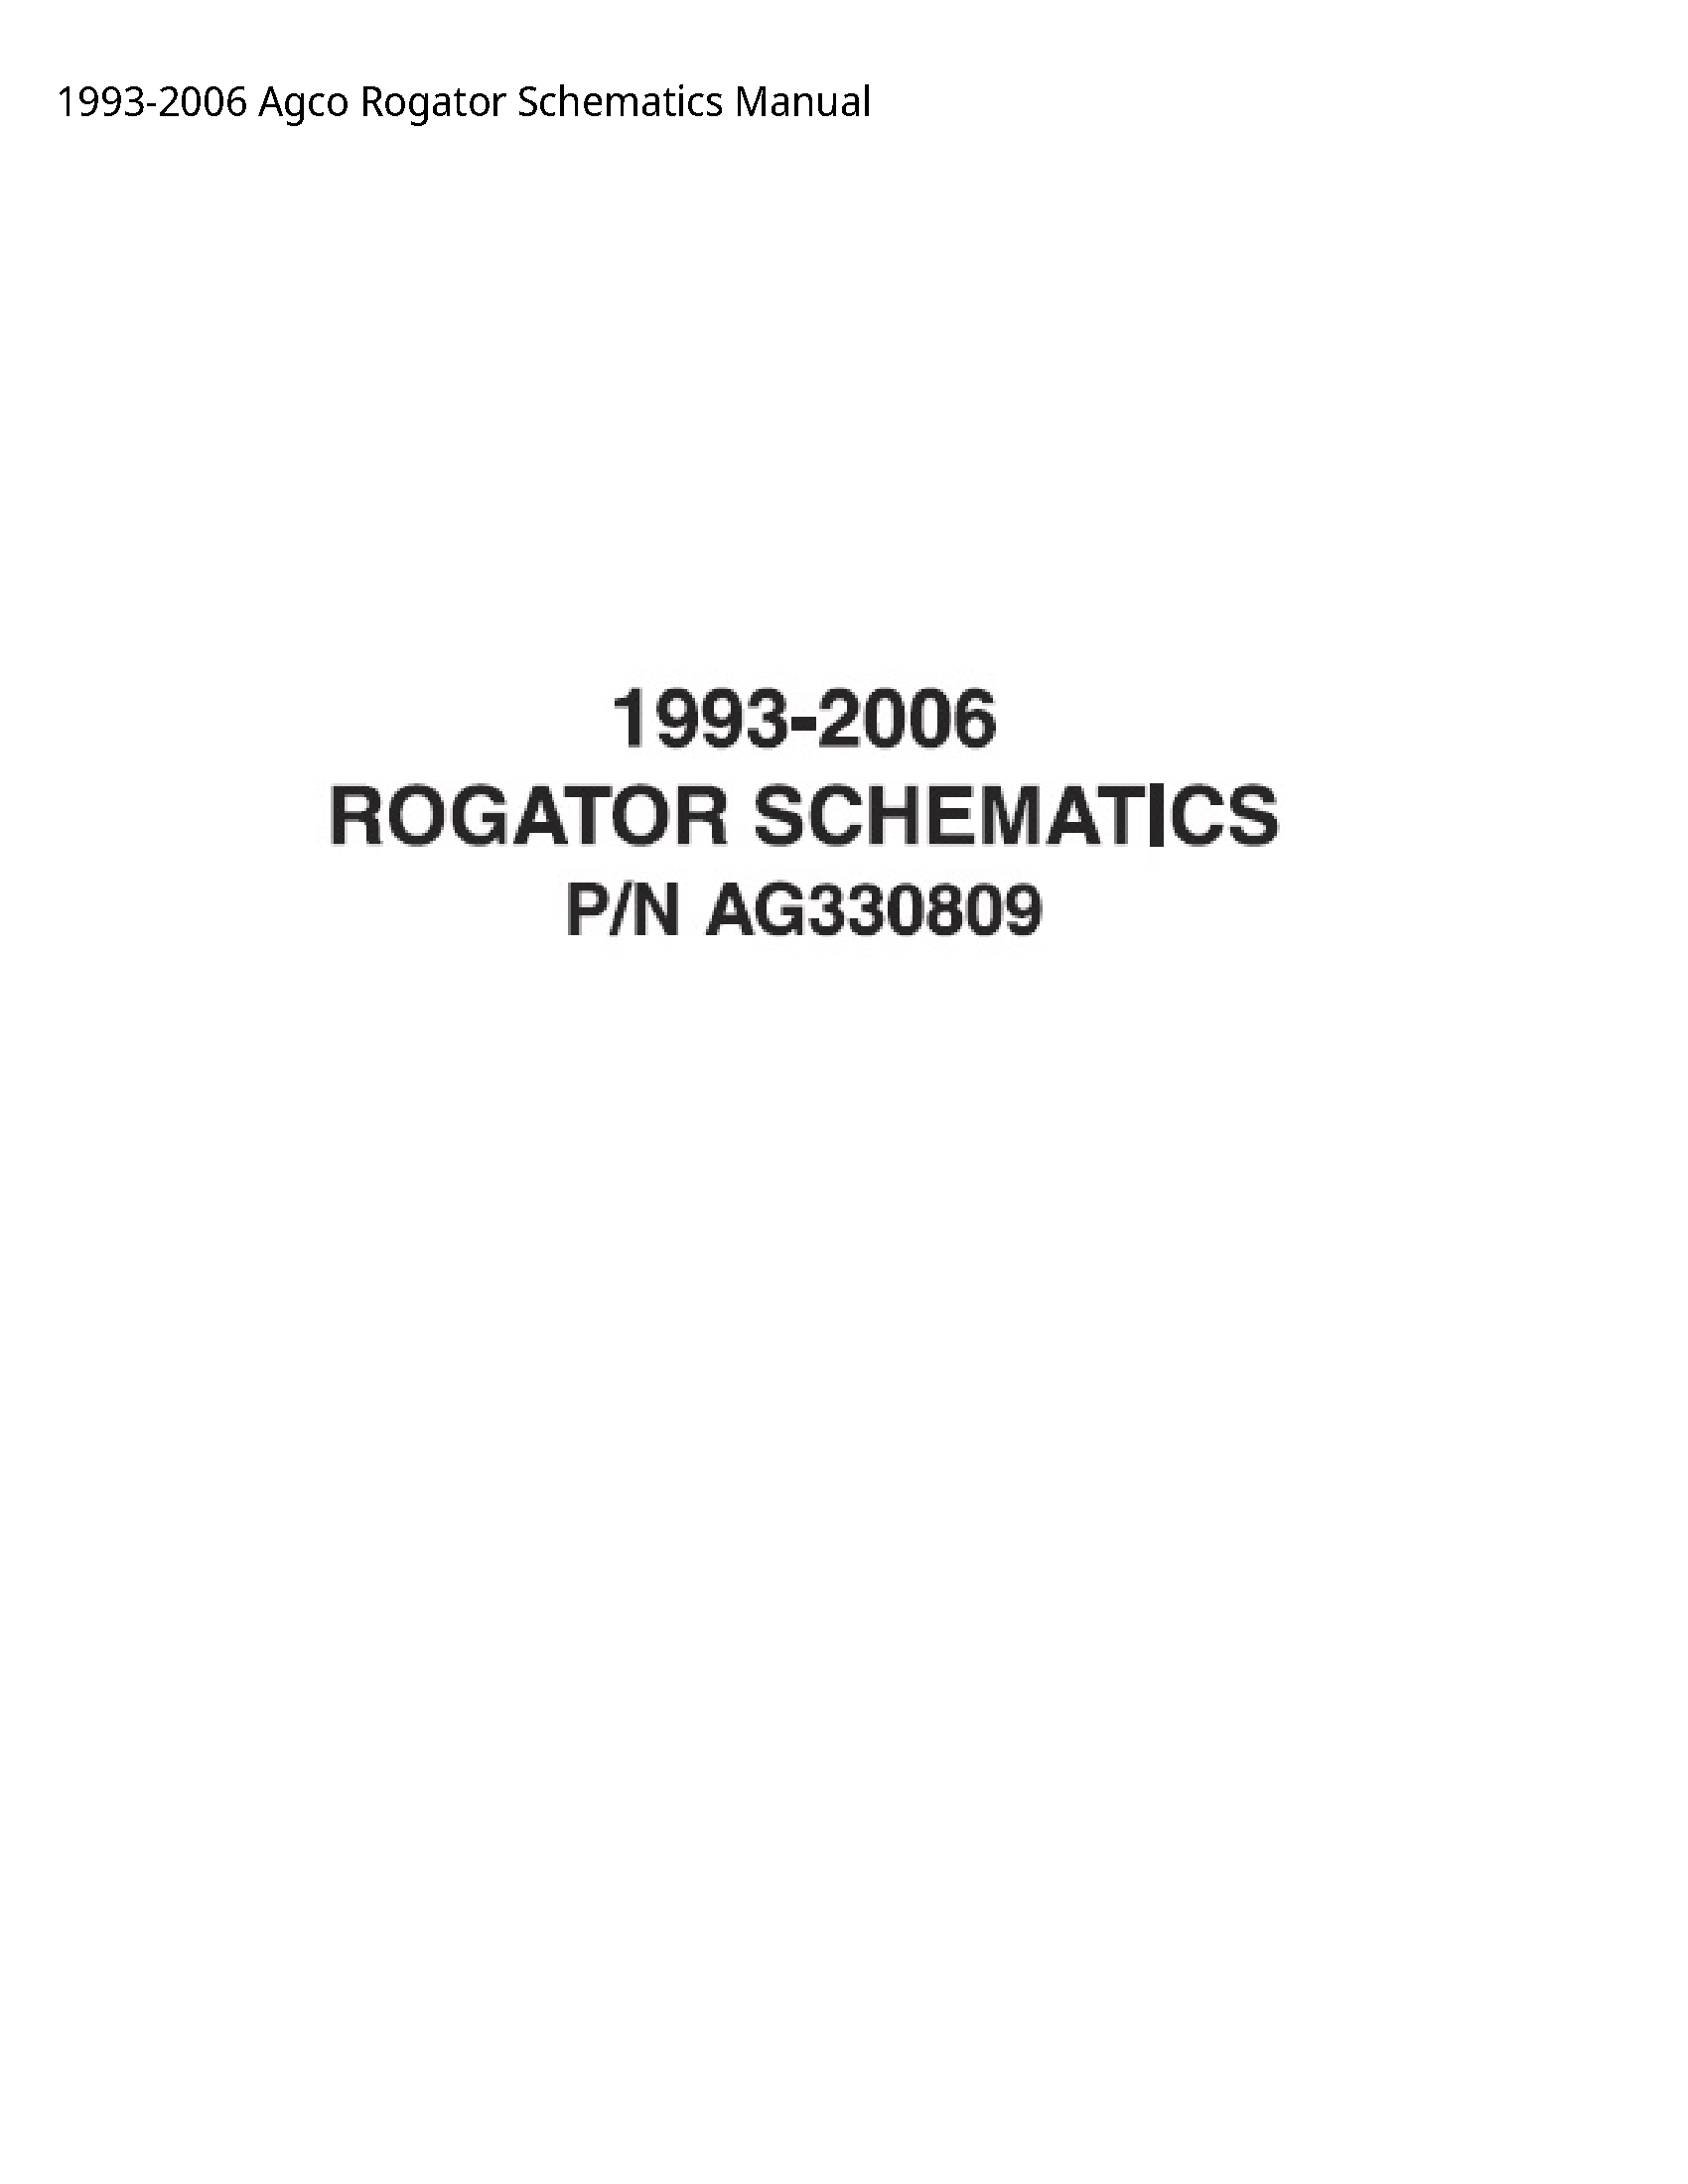 AGCO Rogator Schematics manual